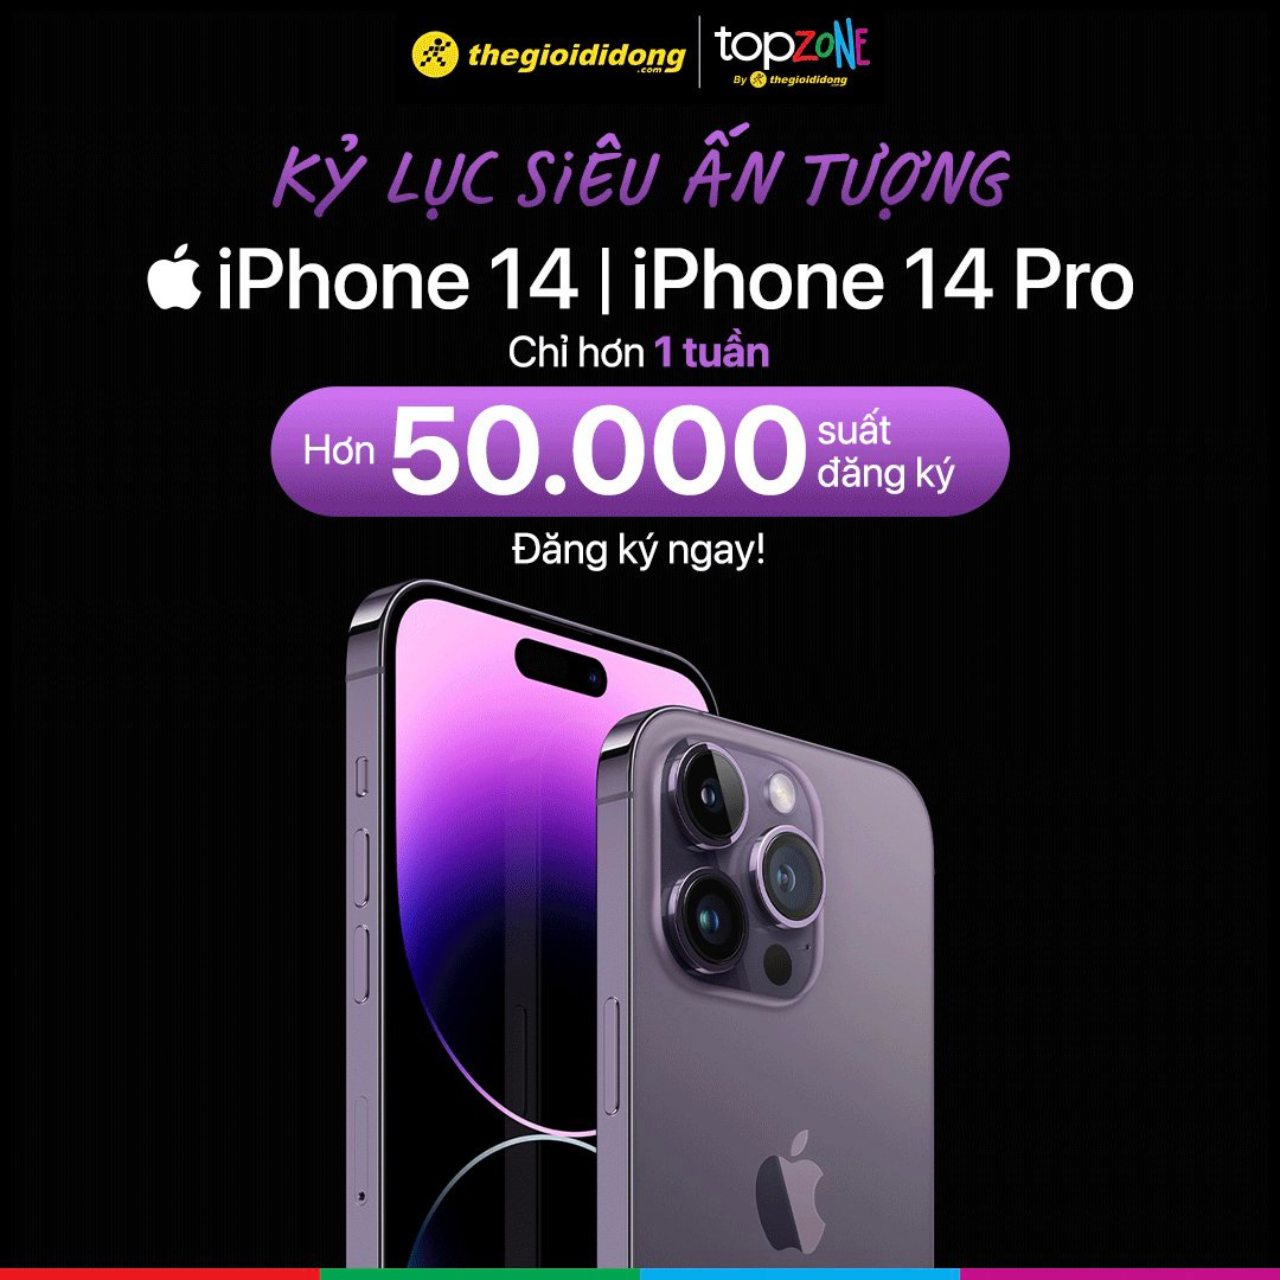 Đừng bỏ lỡ cơ hội tiên phong đặt trước iPhone 14 trước khi nó chính thức ra mắt! Chương trình đặt hàng trước này sẽ giúp bạn sở hữu chiếc điện thoại mới nhất với nhiều ưu đãi hấp dẫn và mức giá phù hợp. Nhanh tay đăng ký ngay hôm nay!